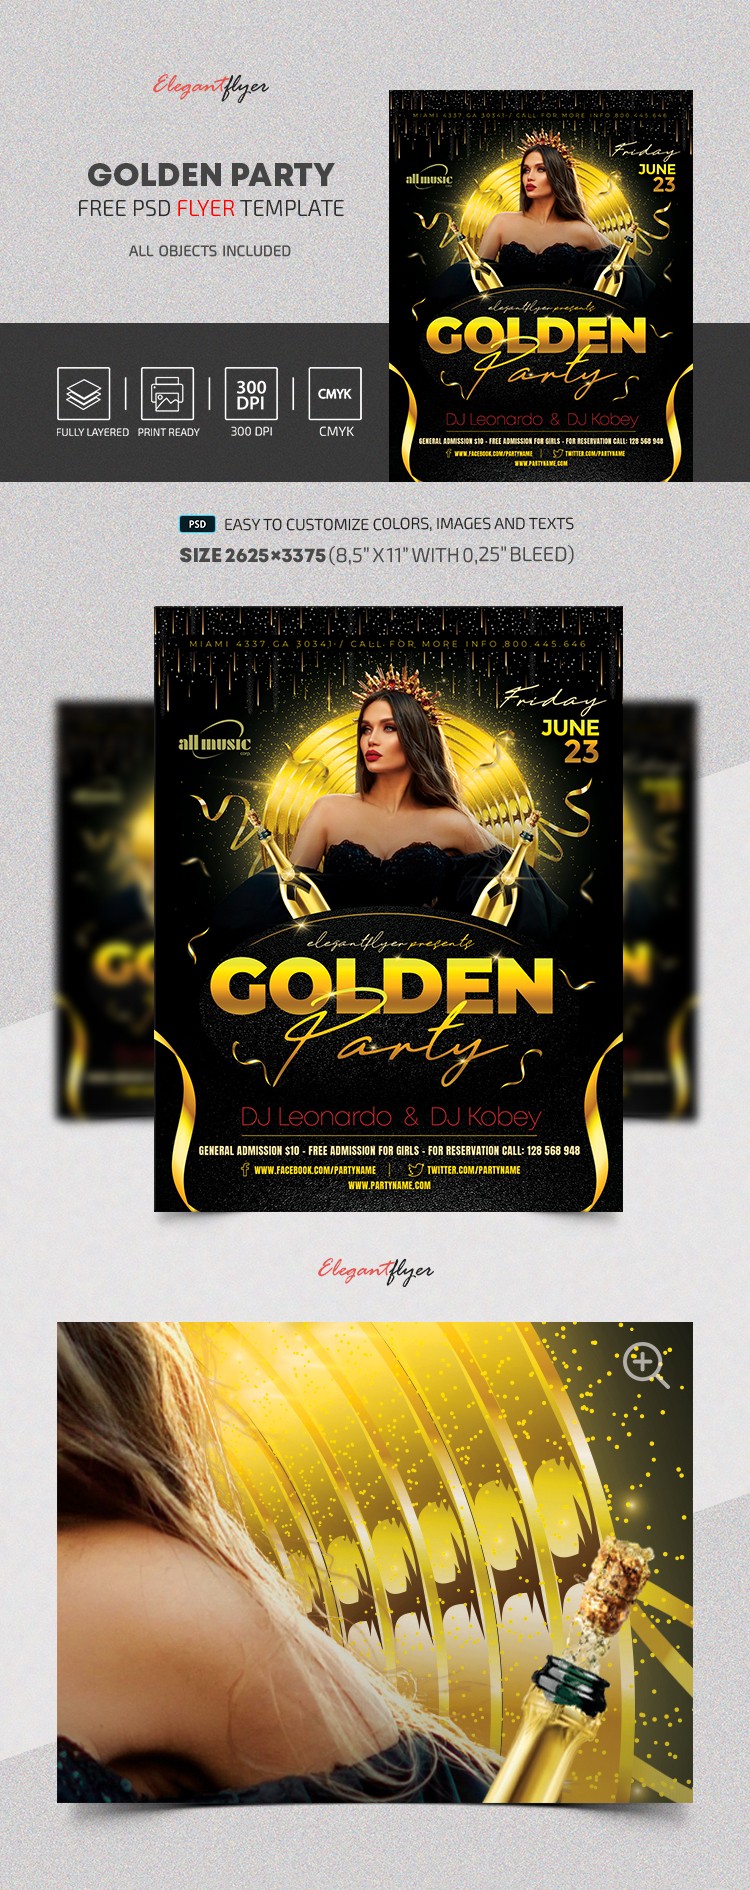 Golden Party Flyer by ElegantFlyer